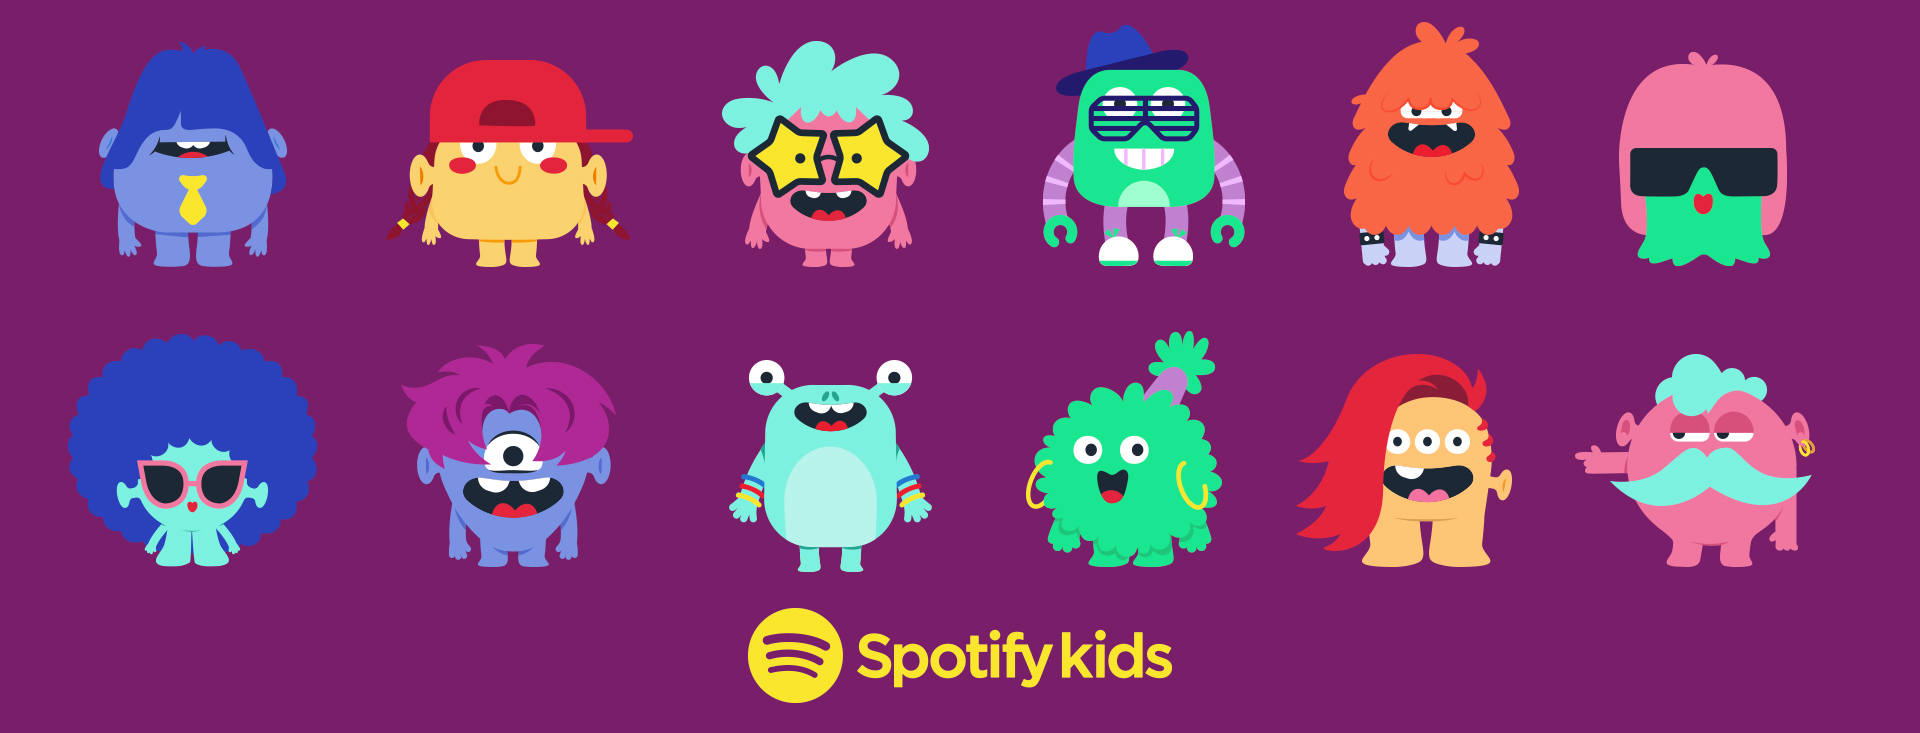 Spotify Kids – osobna aplikacja dla dzieci już w fazie testowej